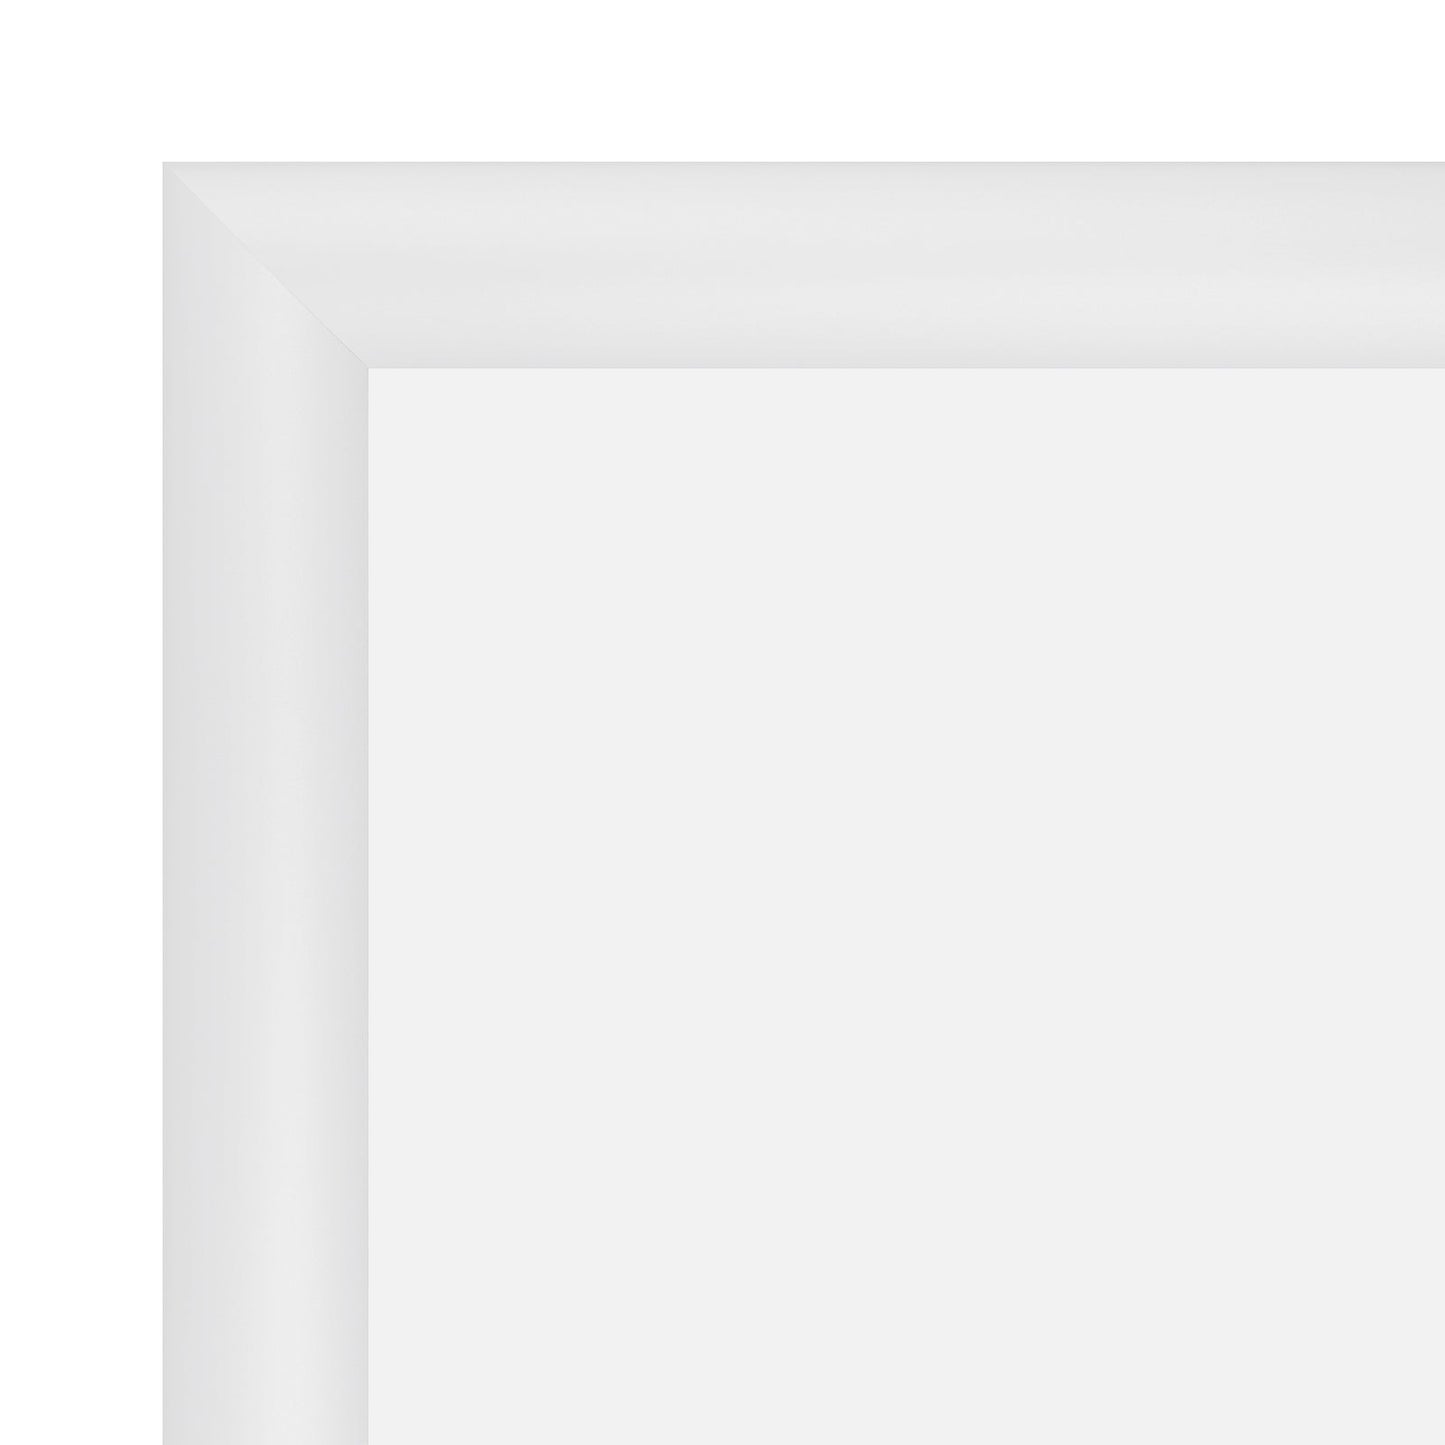 10x13 White SnapeZo® Snap Frame - 1.2" Profile